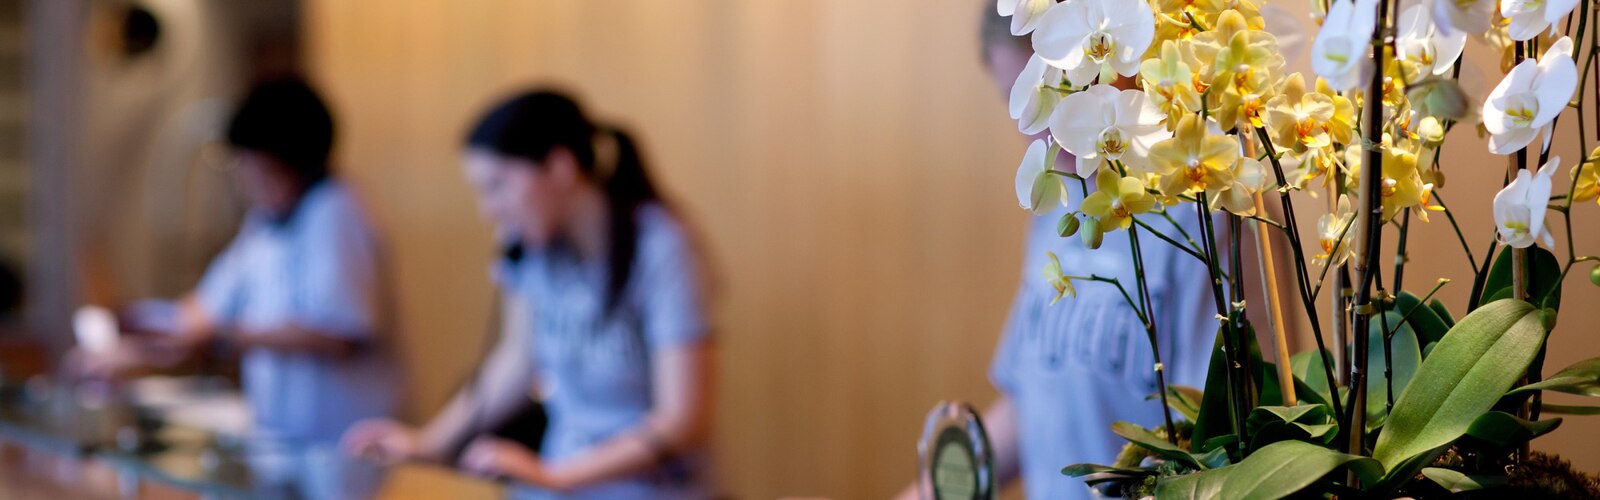 Doniczka z orchideami na biurku recepcji w hotelu, w tle trzy recepcjonistki